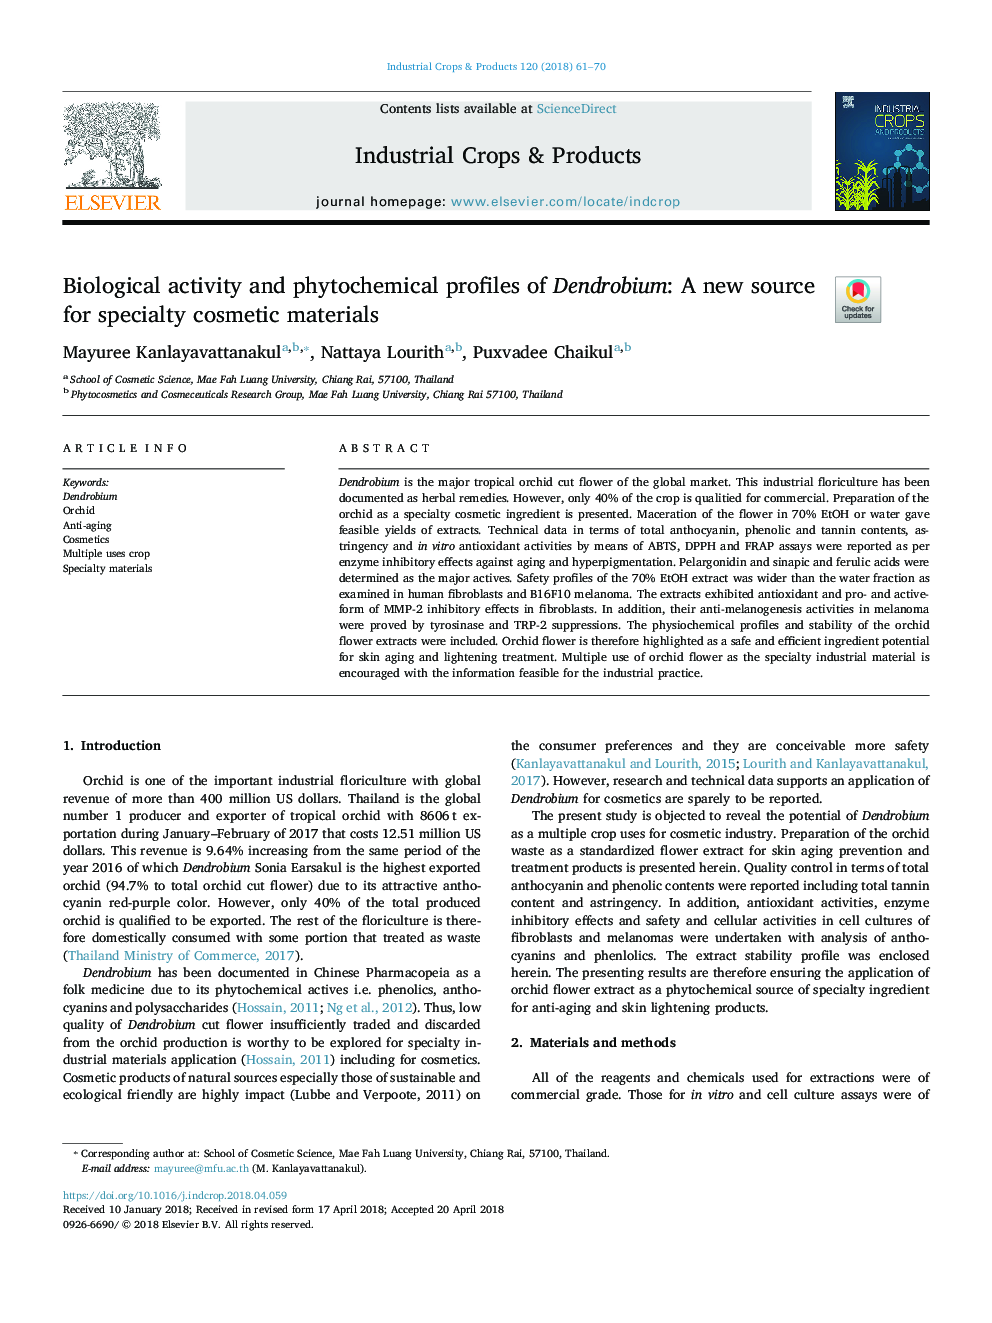 فعالیت بیولوژیکی و مشخصات فیتوشیمیایی دندروبیوم: یک منبع جدید برای مواد آرایشی 